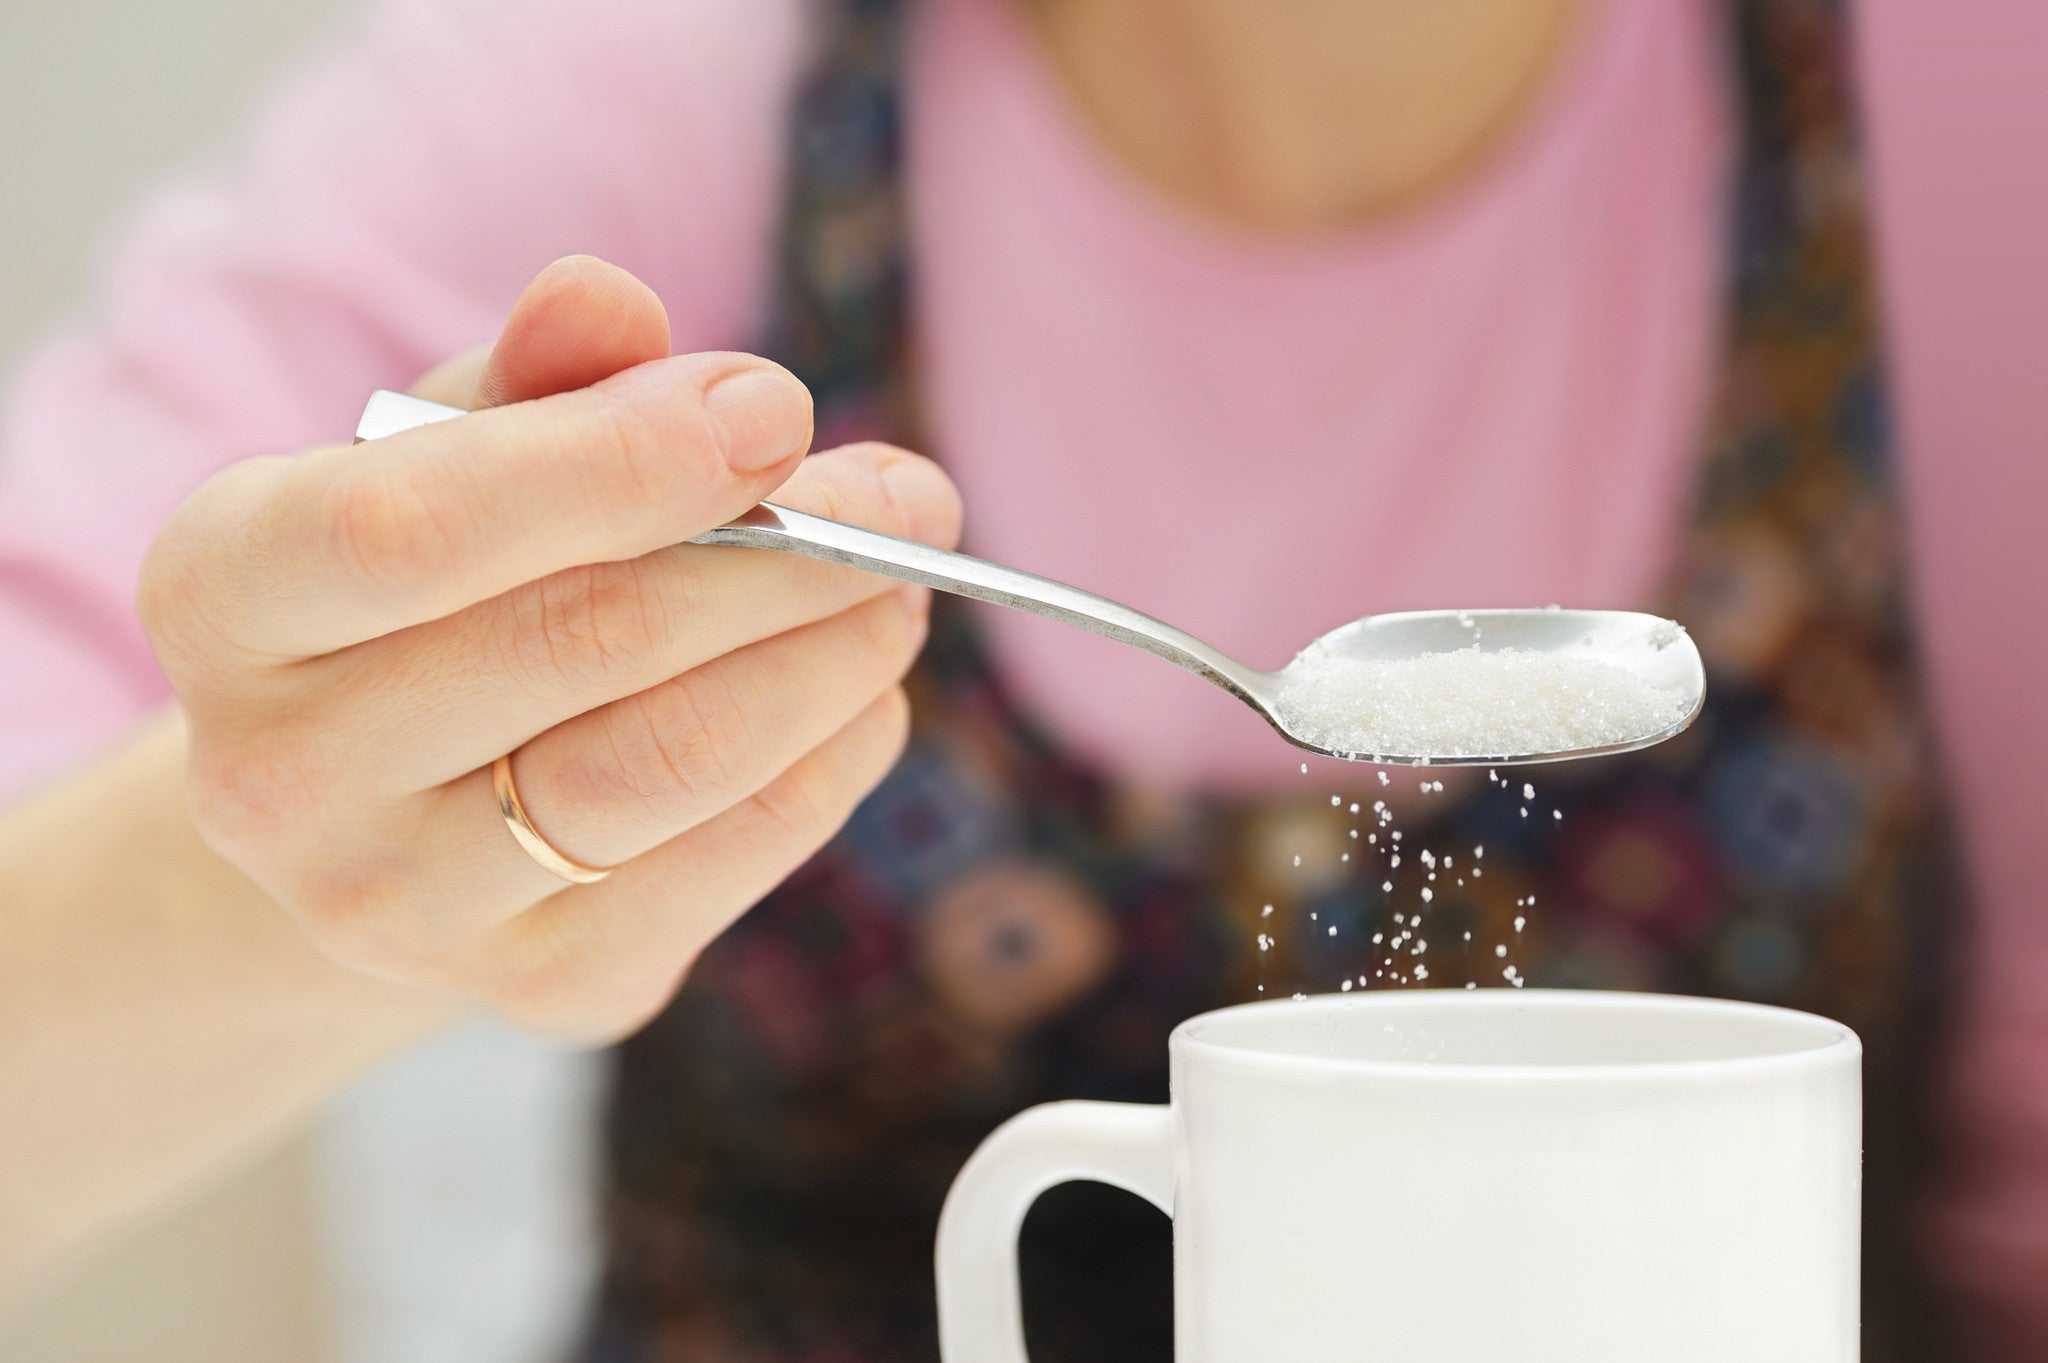 Сладость попки такая что можно в чай макать вместо сахара